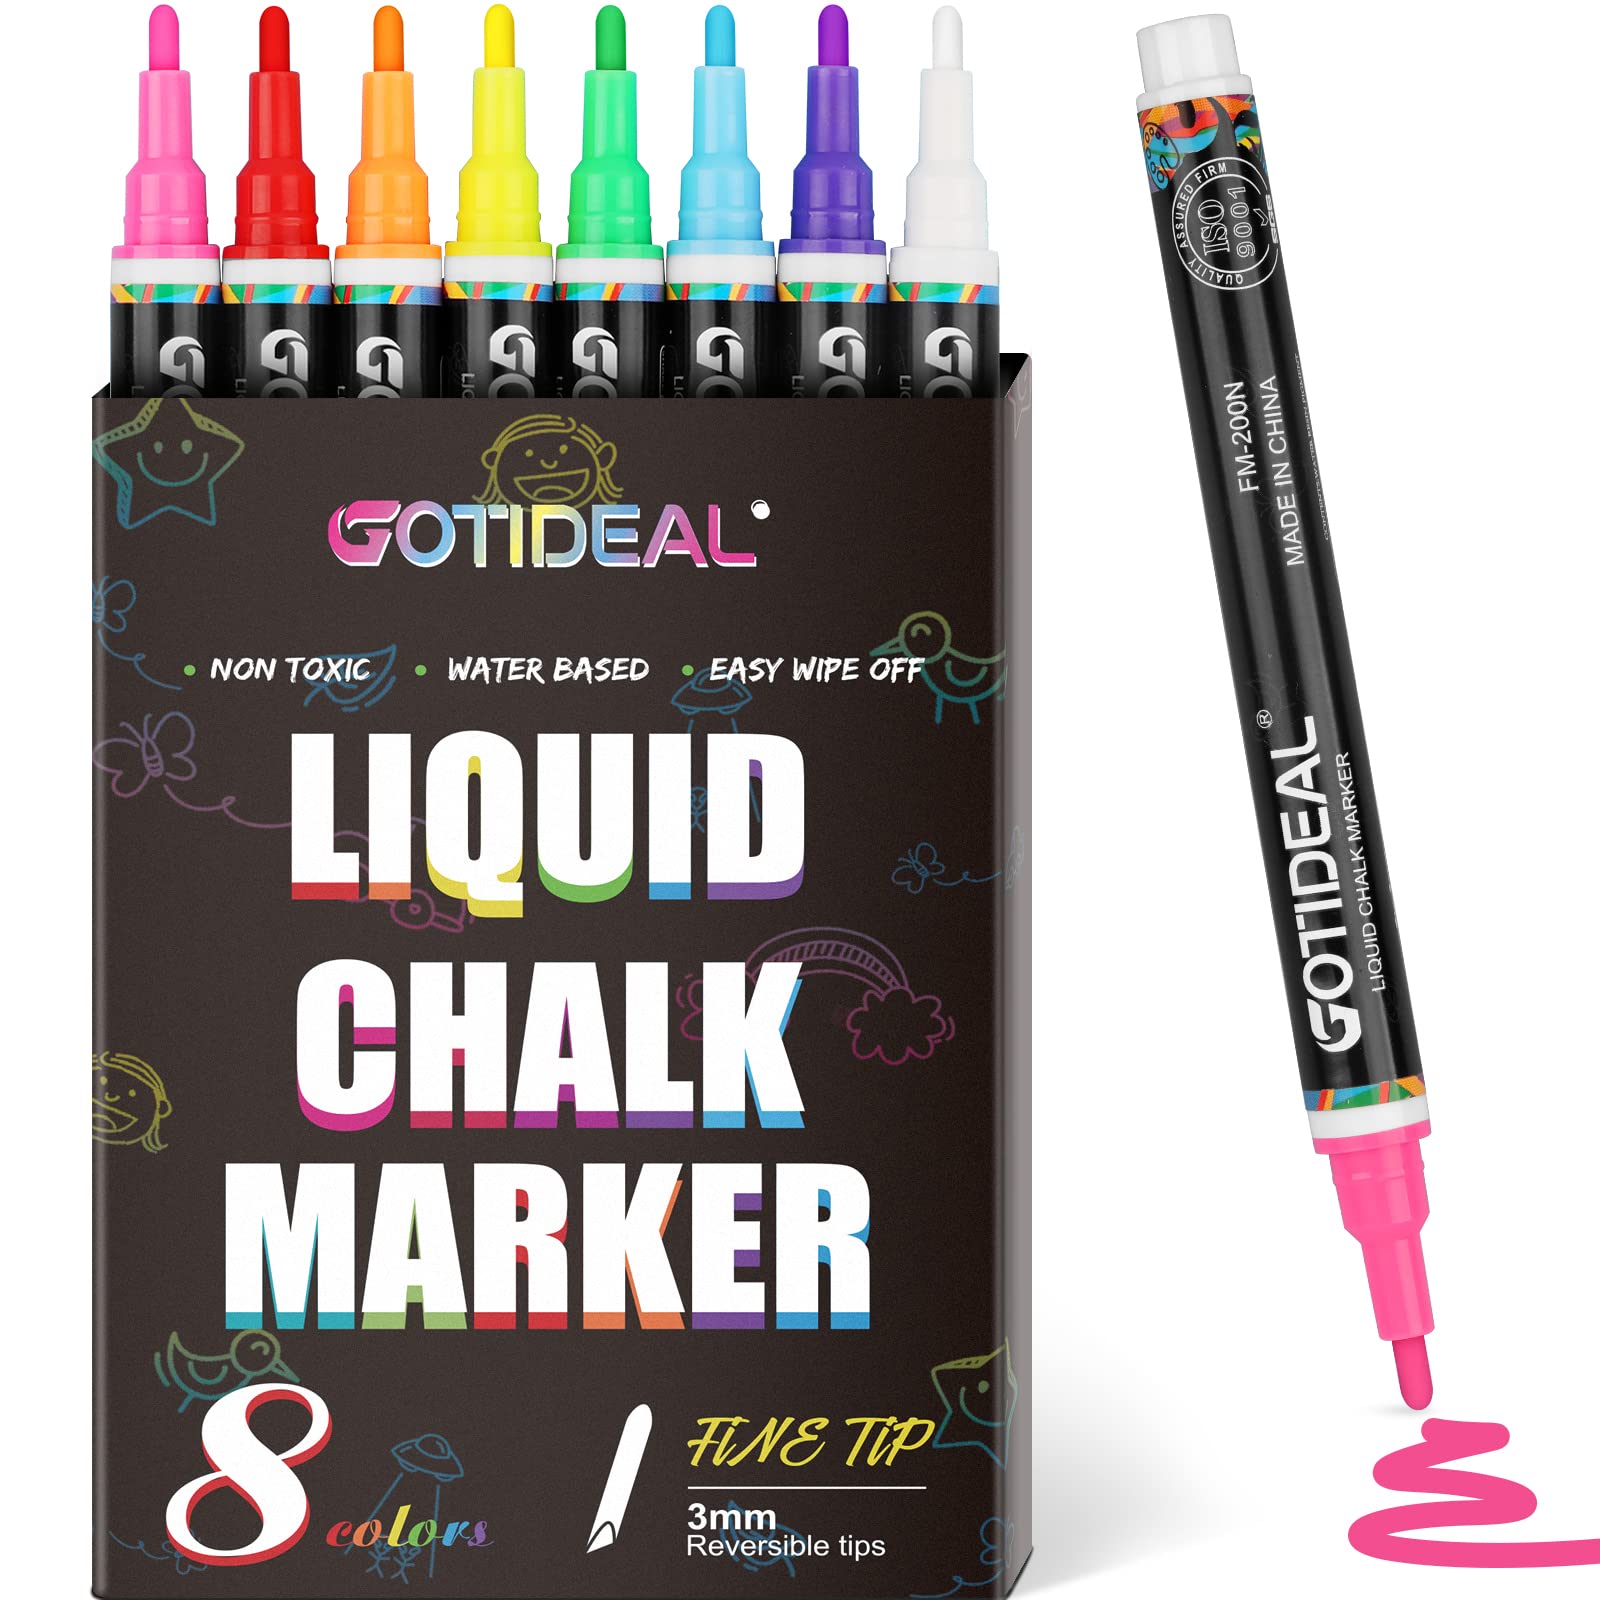 Jumbo Washable Marker Pen for Kids Felt Tip Water Color Pen - China Marker  Pens, Art Marker Pens